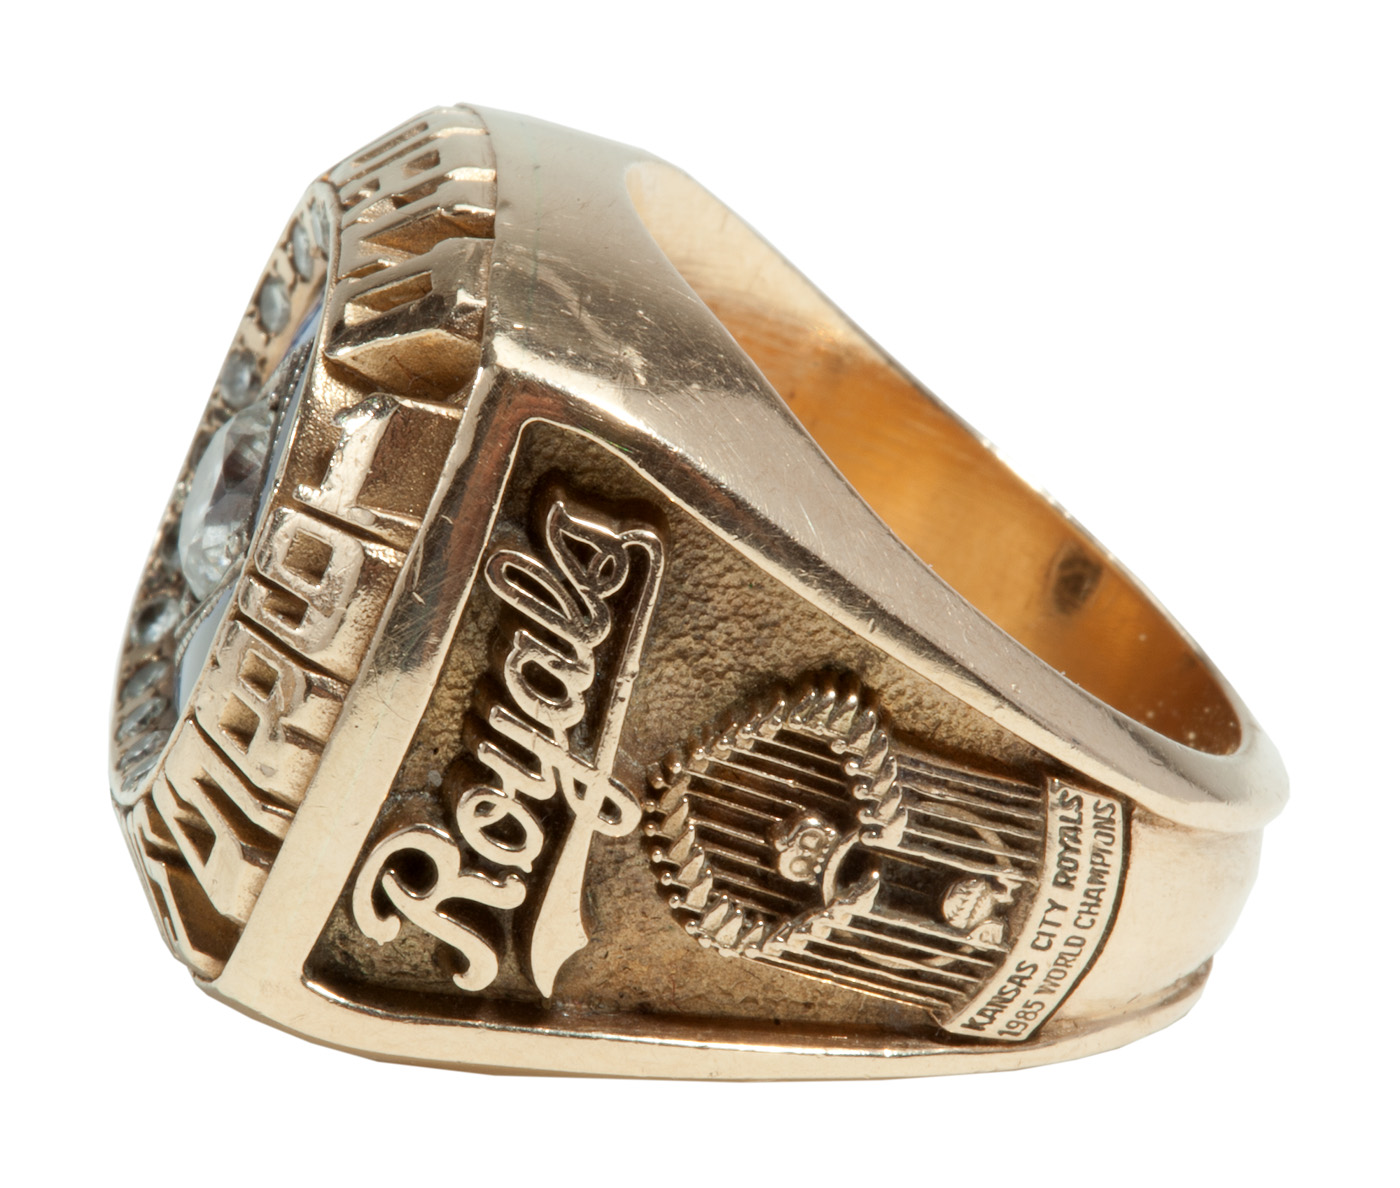 Kansas City Royals 1985, 2015 World Series & 2014 American League Championship Ring Set - No - 13